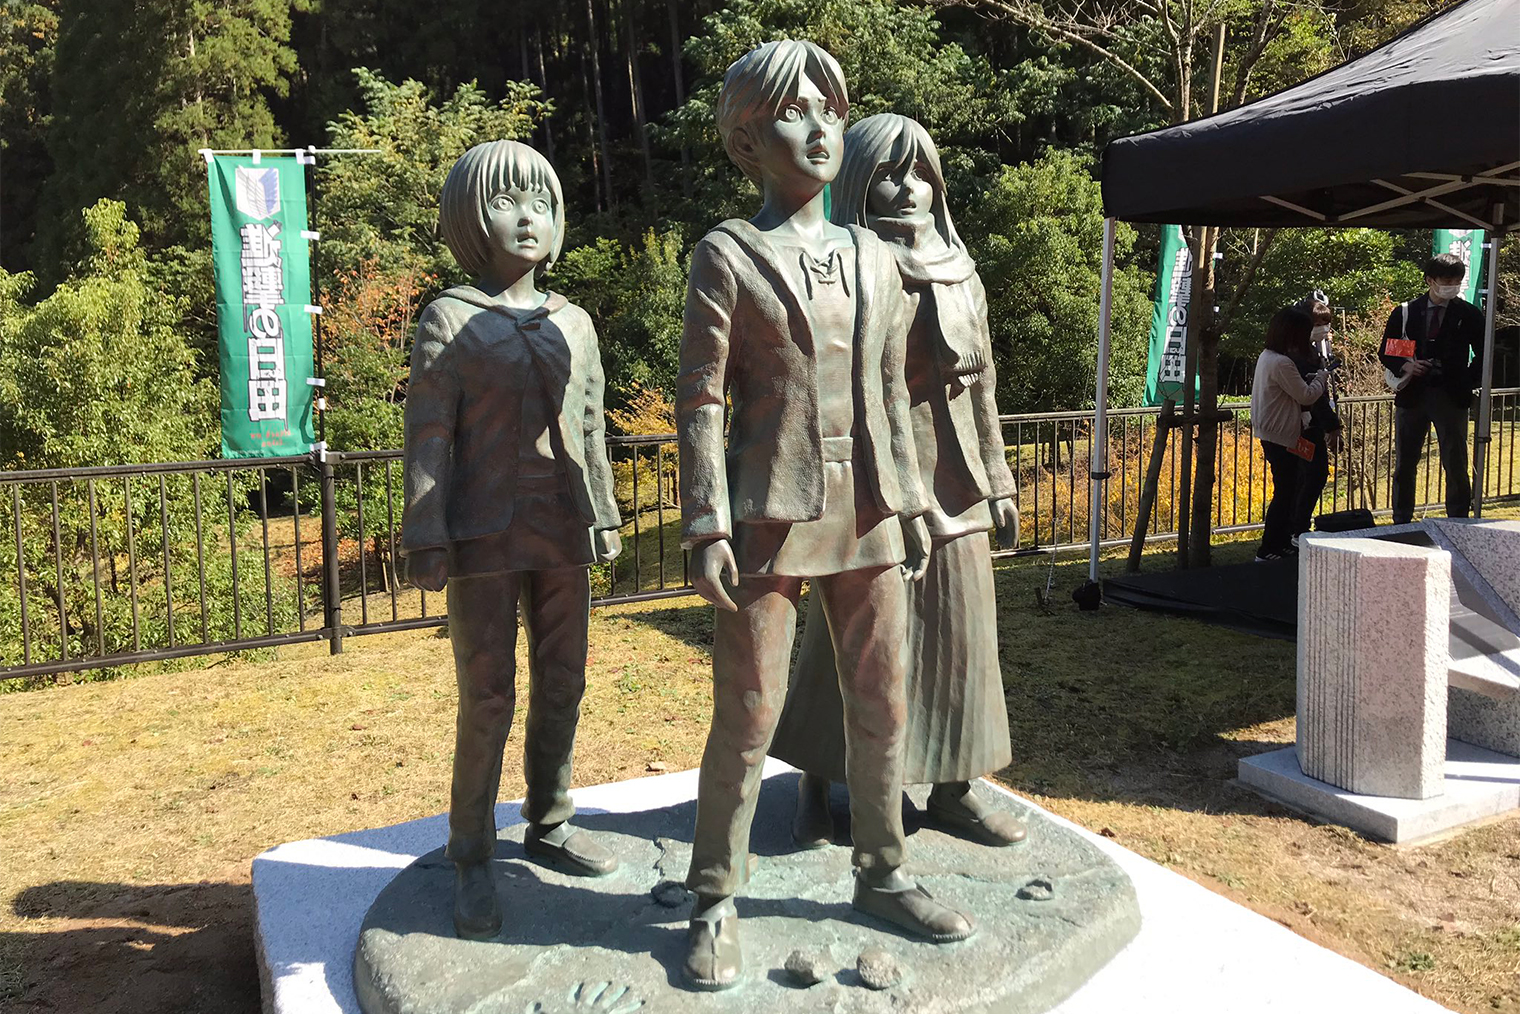 В 2020 году в городе Хита, где родился мангака, были установлены статуи Эрена, Микасы и Армина. Источник: ANN